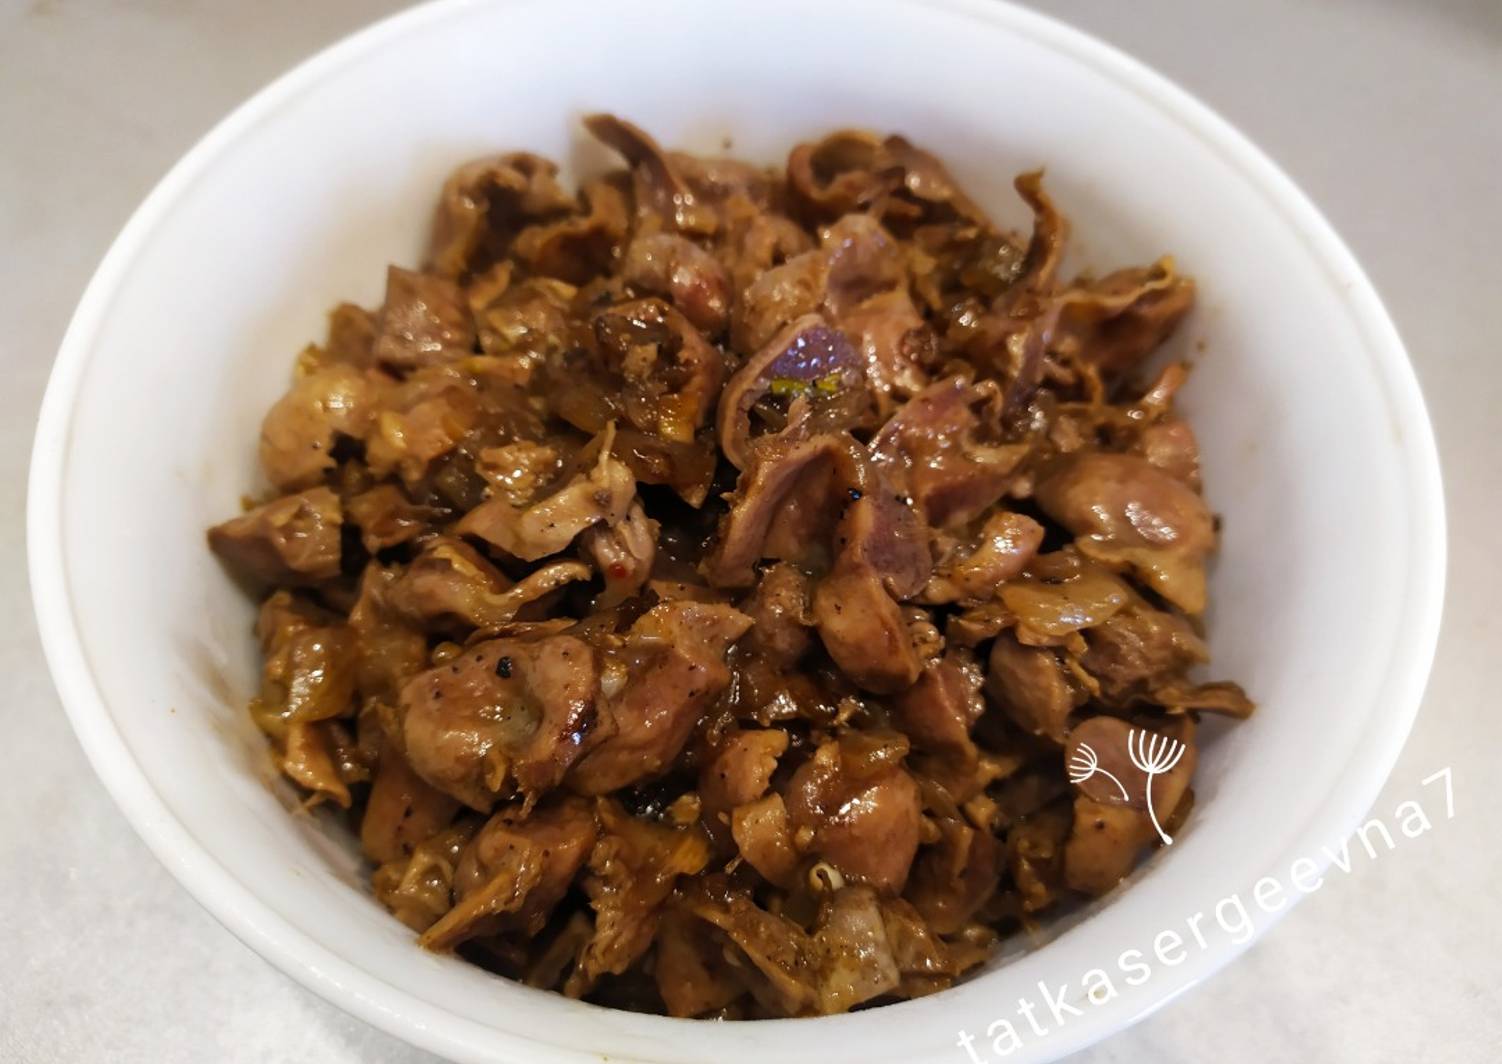 Рецепт куриных желудочков с подливкой рецепт с фото пошагово